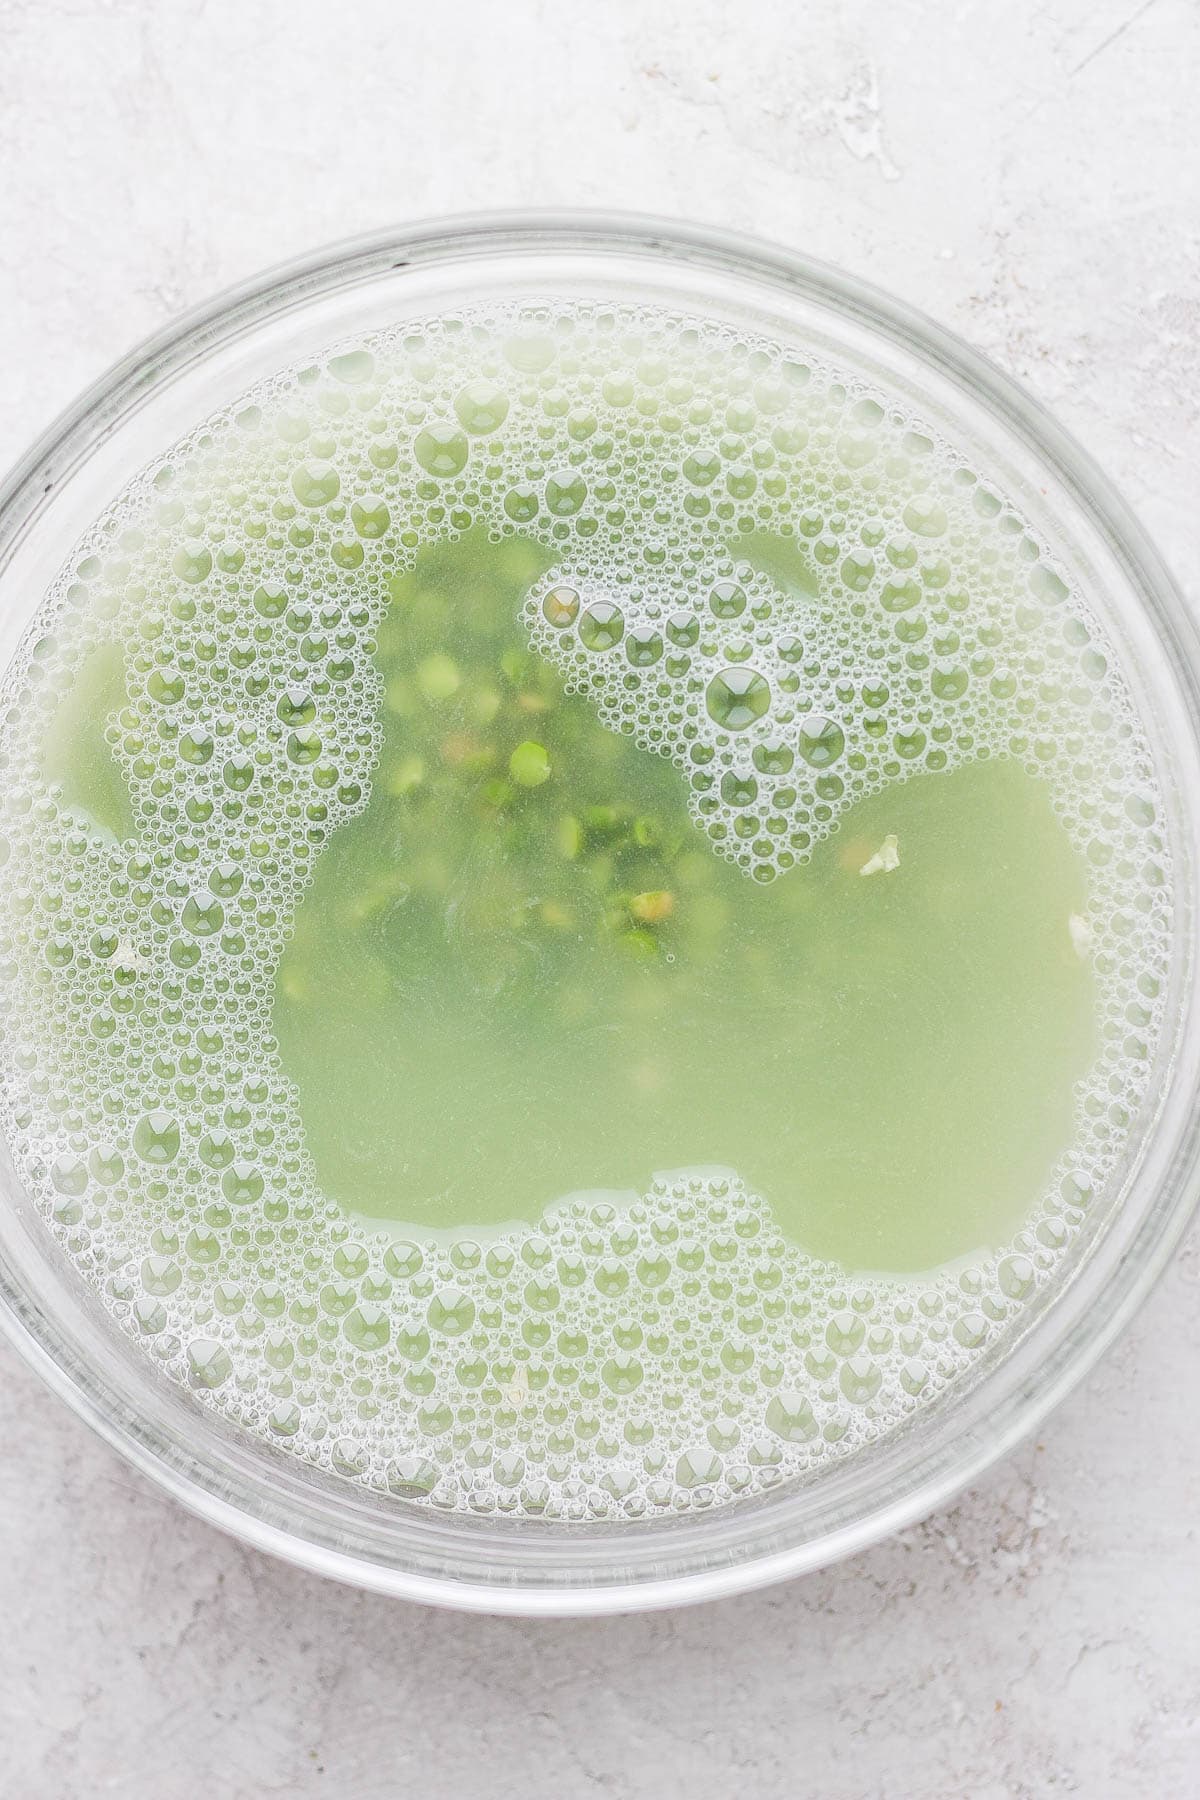 Green split peas soaking in water in a glass bowl. 